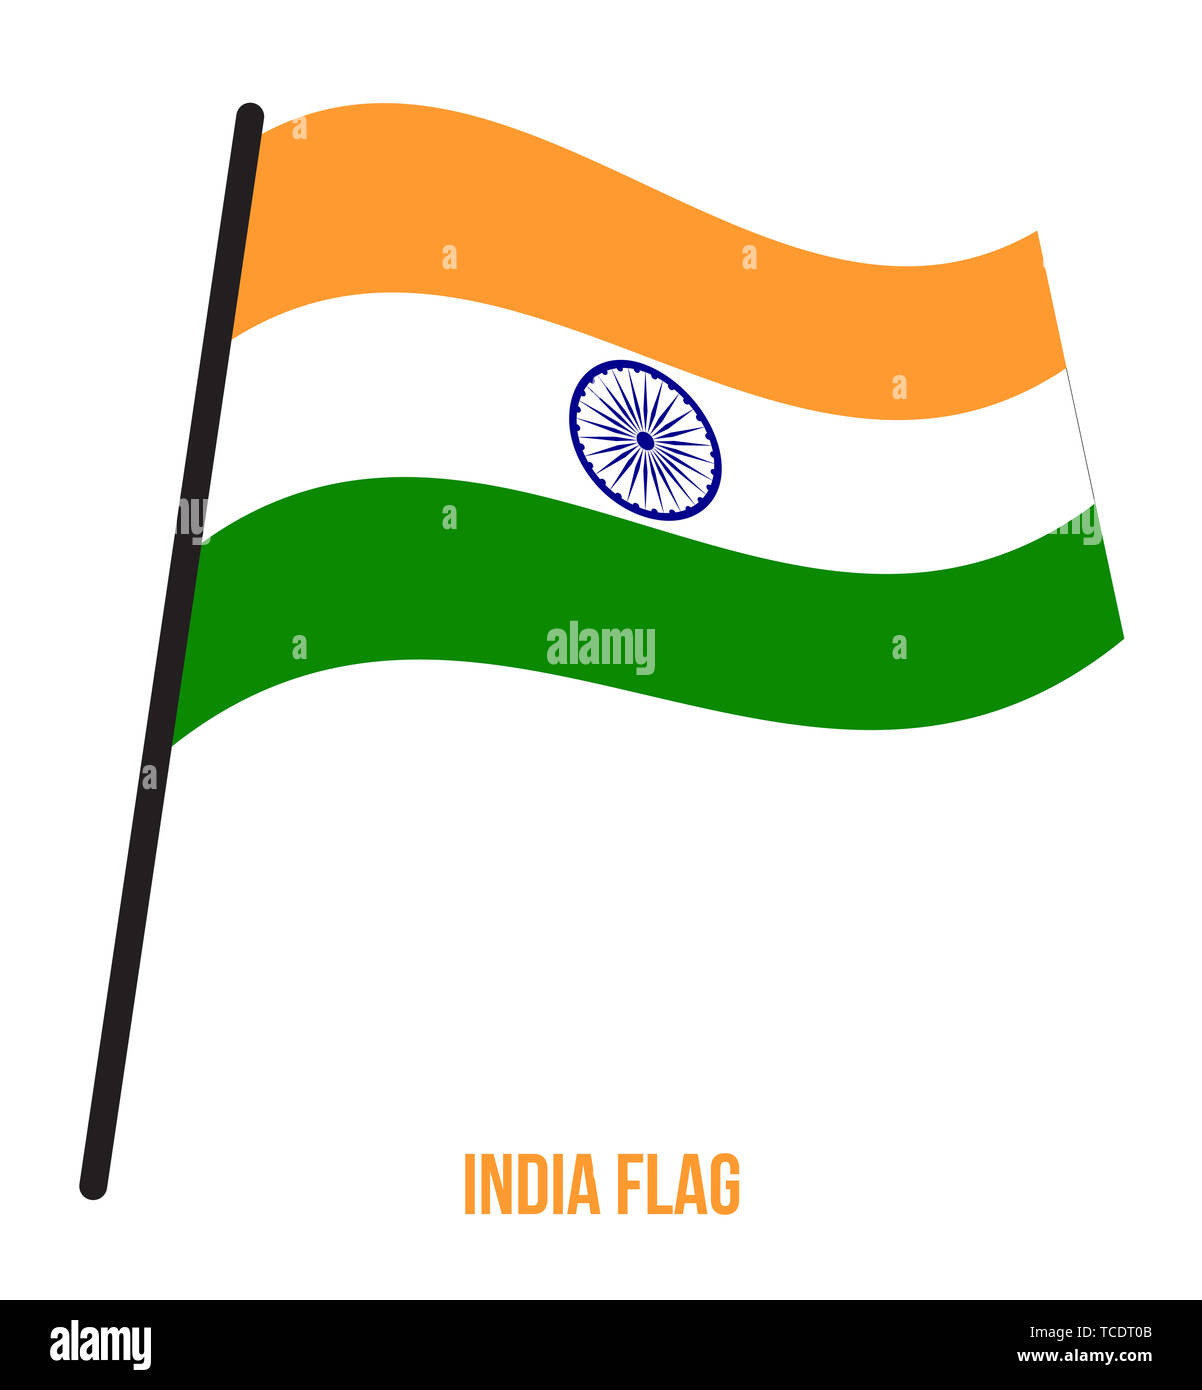 Ondear la bandera india ilustración vectorial sobre fondo blanco. Bandera Nacional de la India. Foto de stock